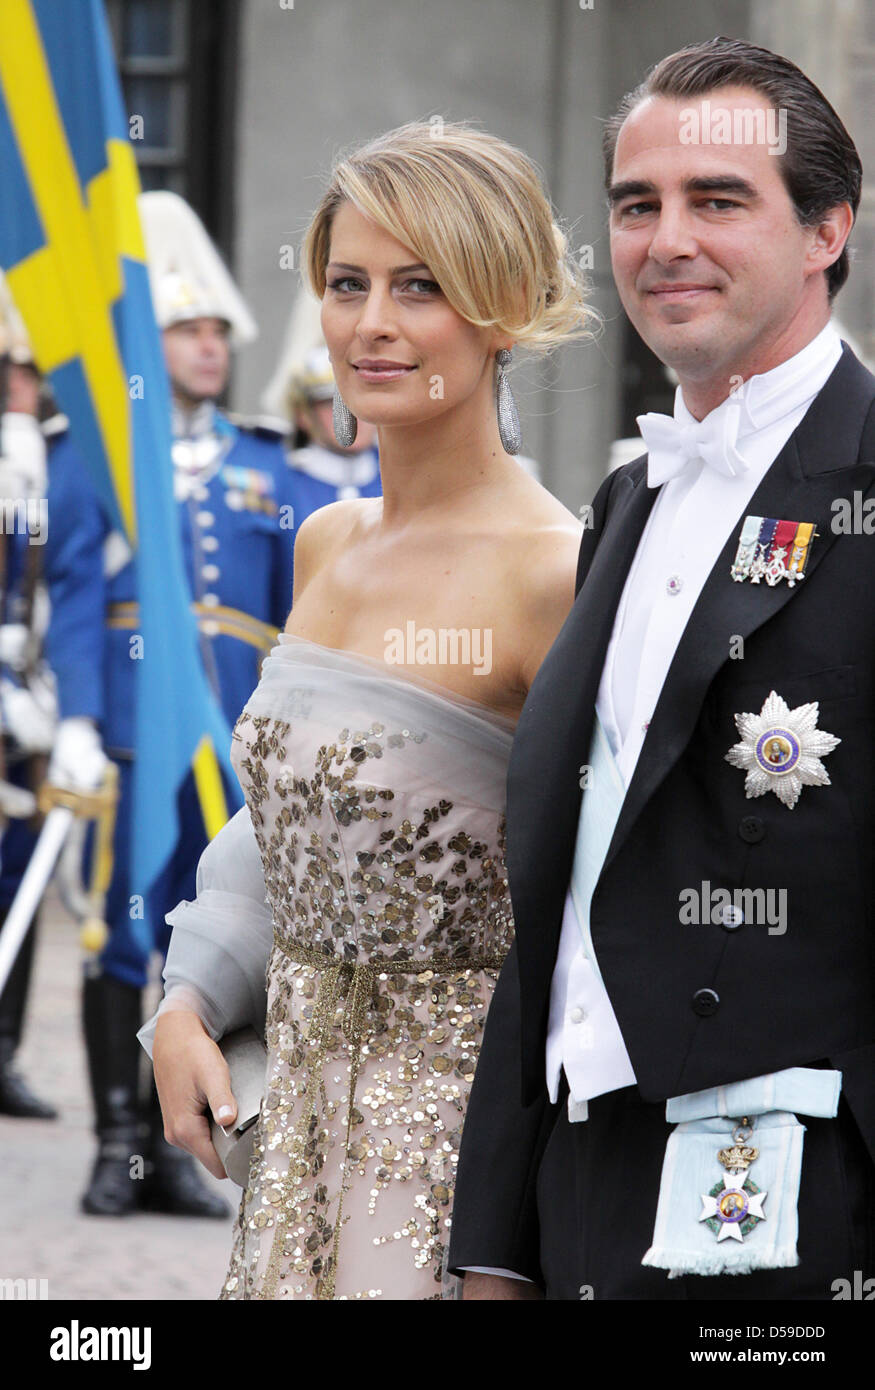 Prinz Nikolaos von Griechenland und seine Frau Tatiana Blatnik kommen für die Hochzeit von Kronprinzessin Victoria von Schweden und Daniel Westling in Stockholm, Schweden, 19. Juni 2010. Foto: Albert Nieboer (Niederlande) Stockfoto